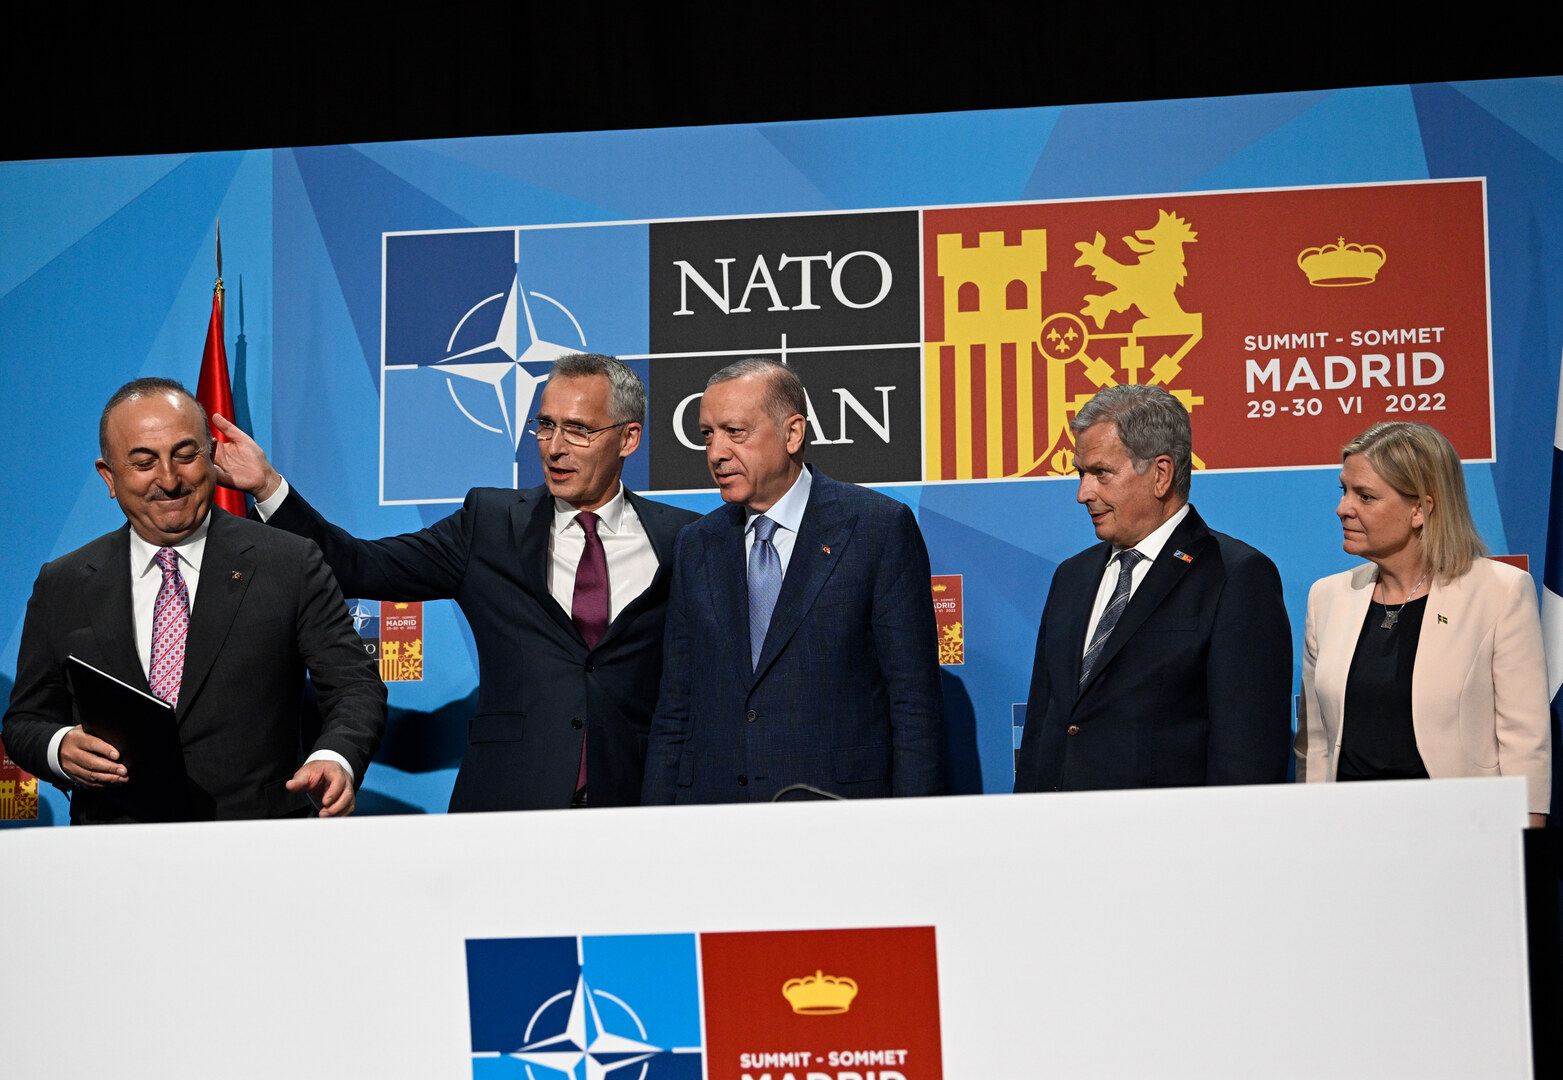 Швеция в нато официально. Вступление Швеции в НАТО. Финляндия и Швеция в НАТО. Переговоры стран. Саммит НАТО В Мадриде.